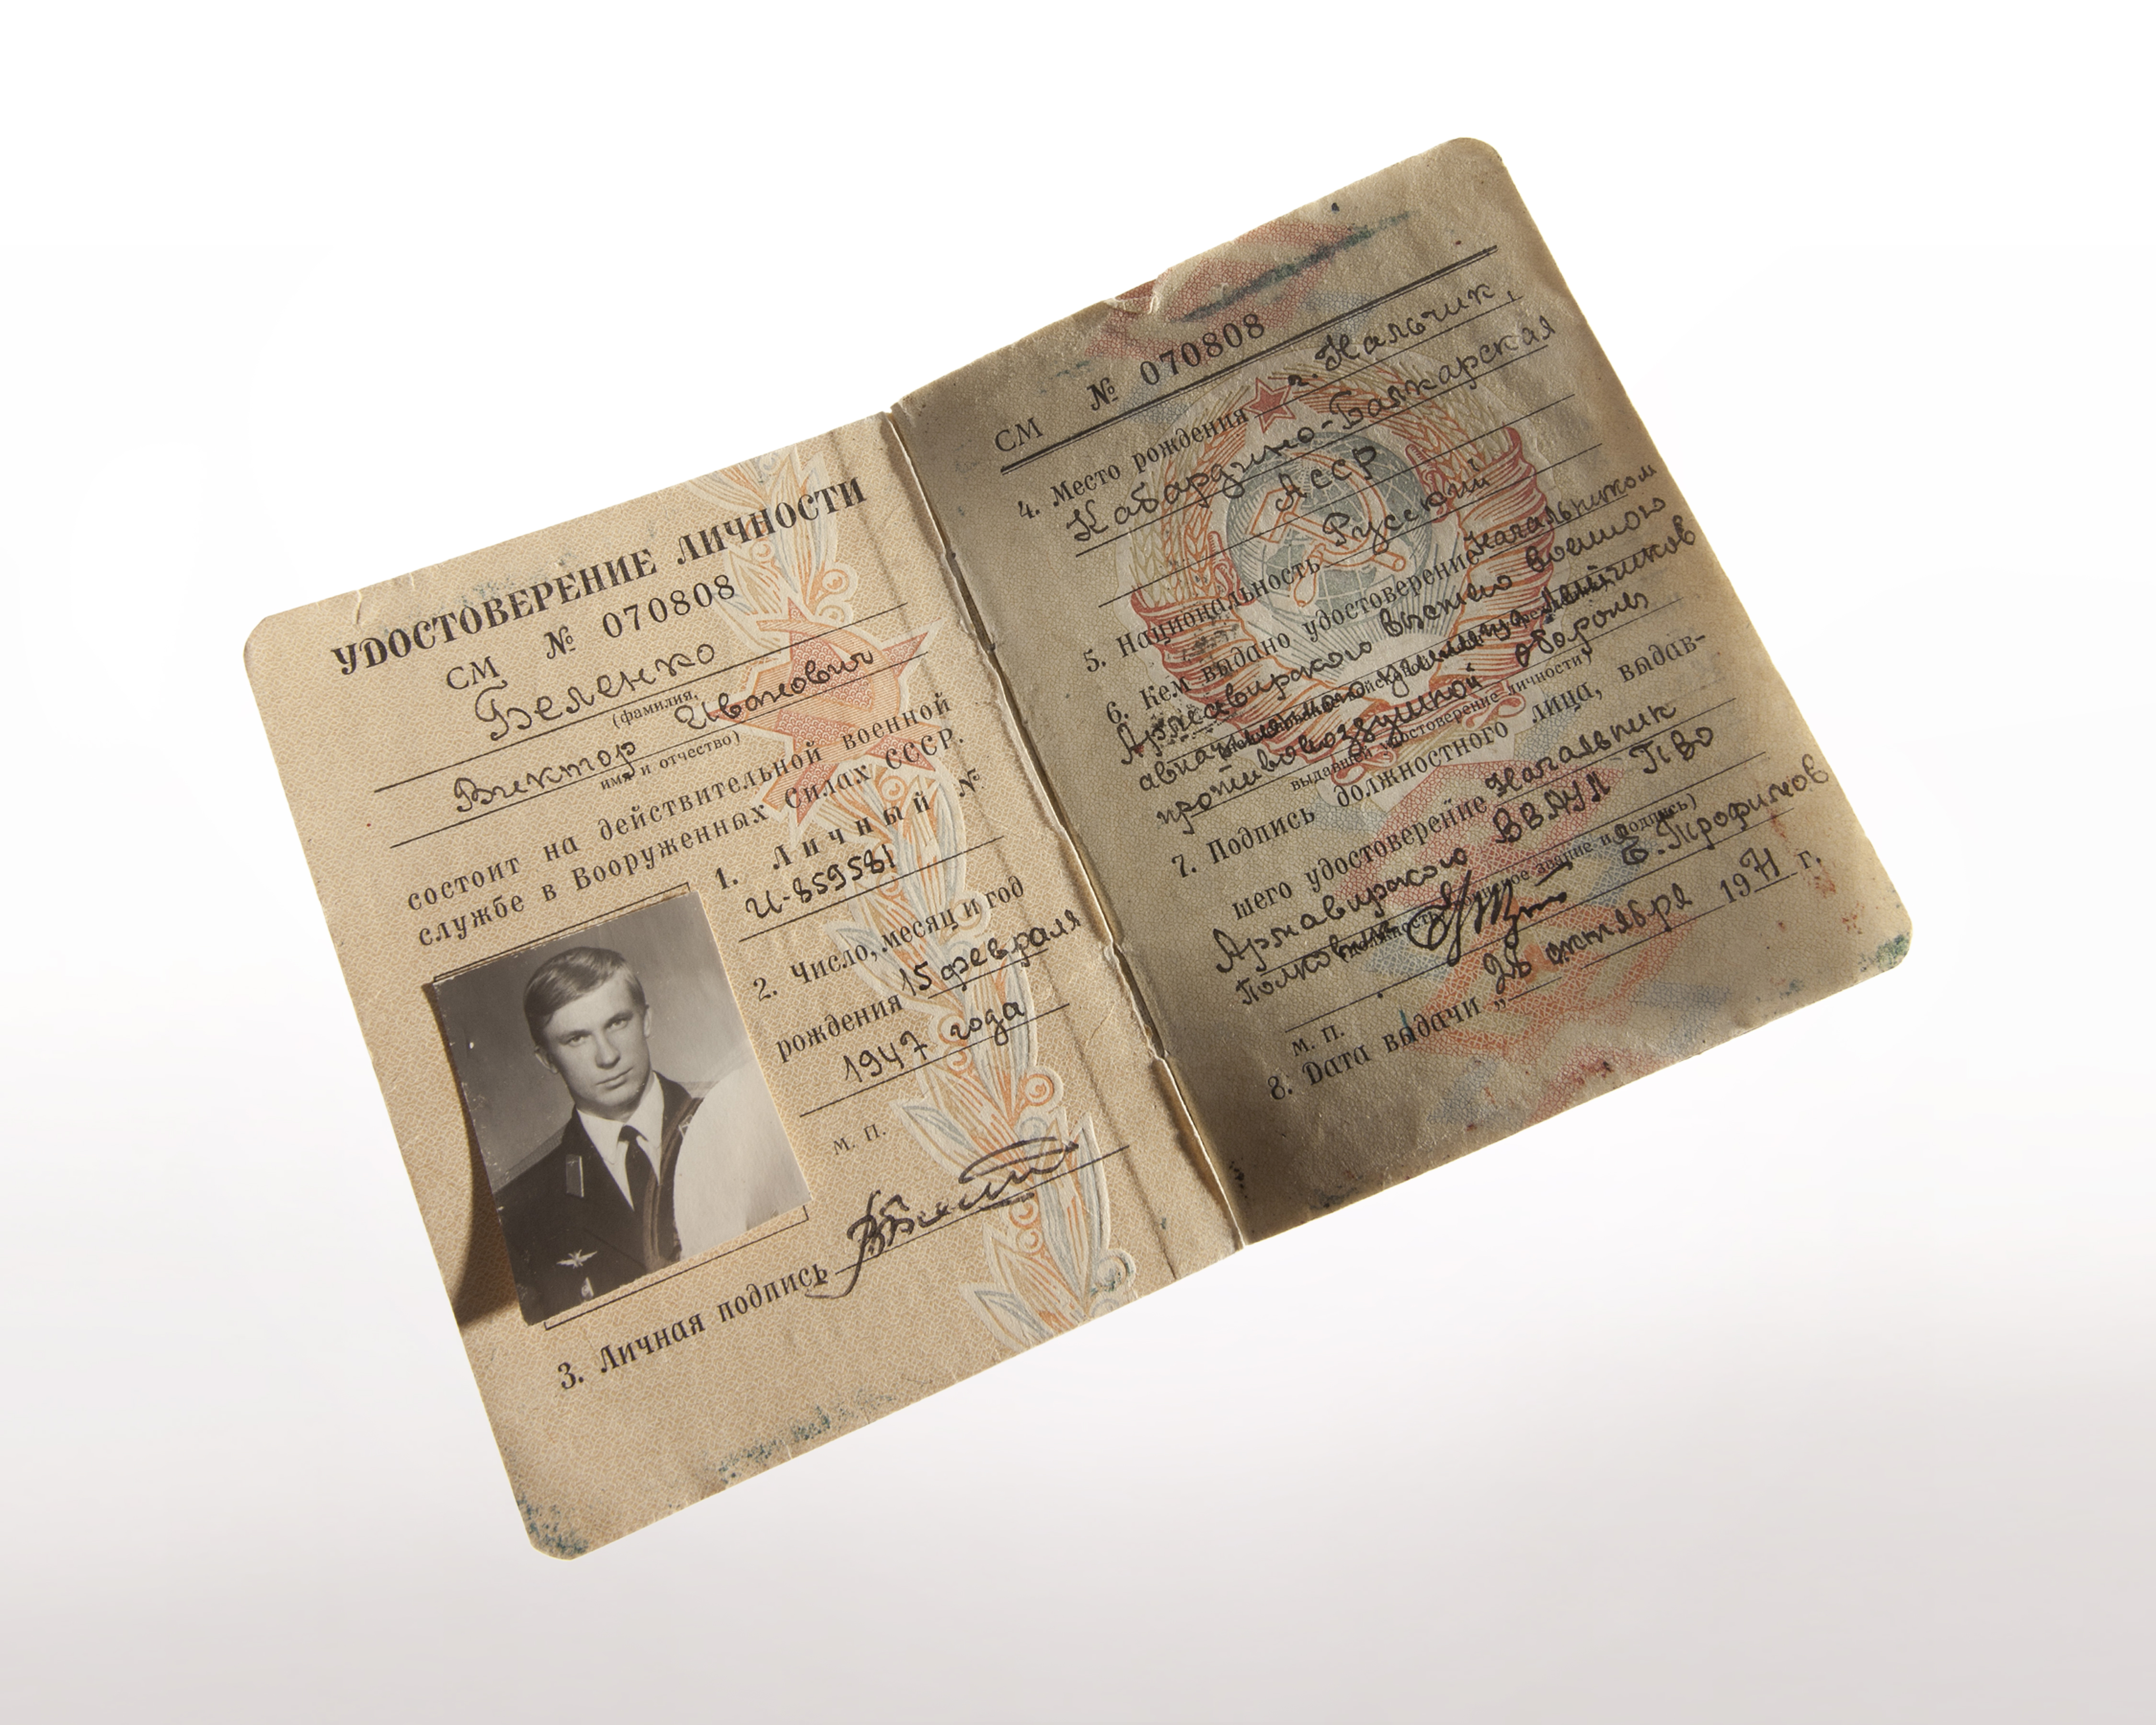 Former Soviet Pilot Viktor Belenko’s Military Identity Document - Flickr - The Central Intelligence Agency